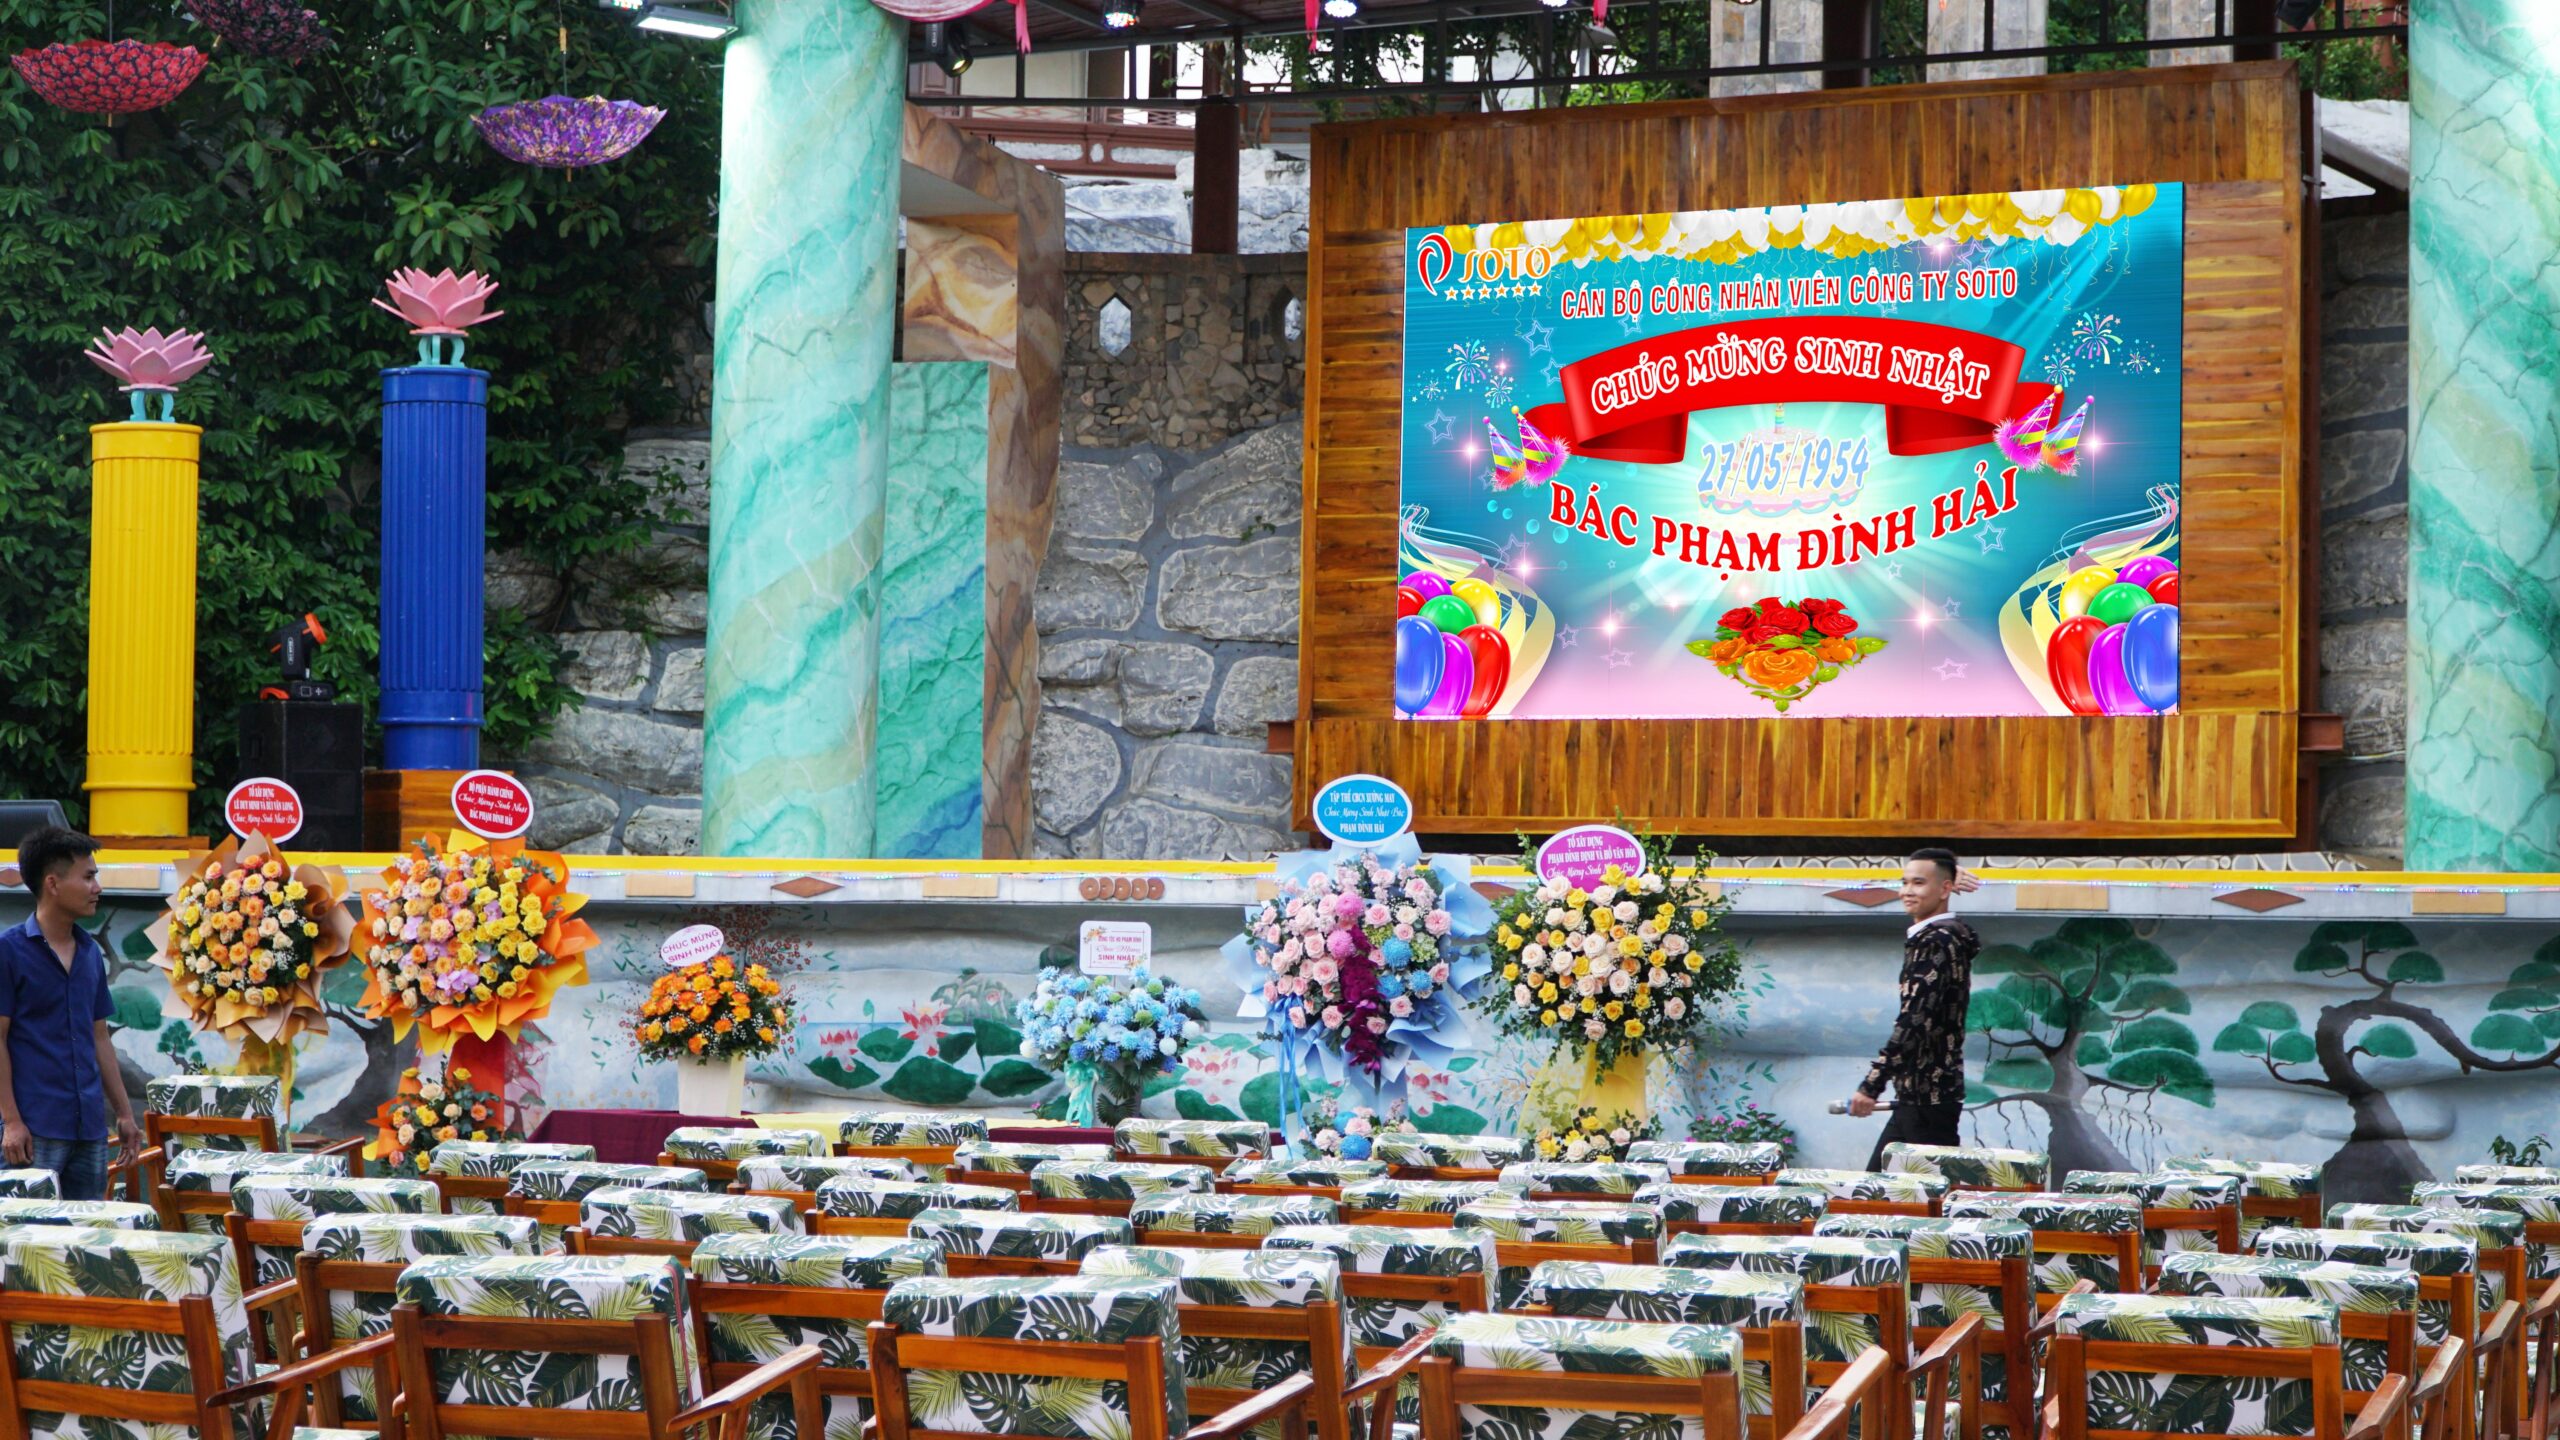 Cán bộ công nhân viên SoTo tổ chức “Chúc Mừng Sinh Nhật Bác Hải” và sự kiện SoTo Biển Tiên Trang tròn 20 năm xây dựng và phát triển